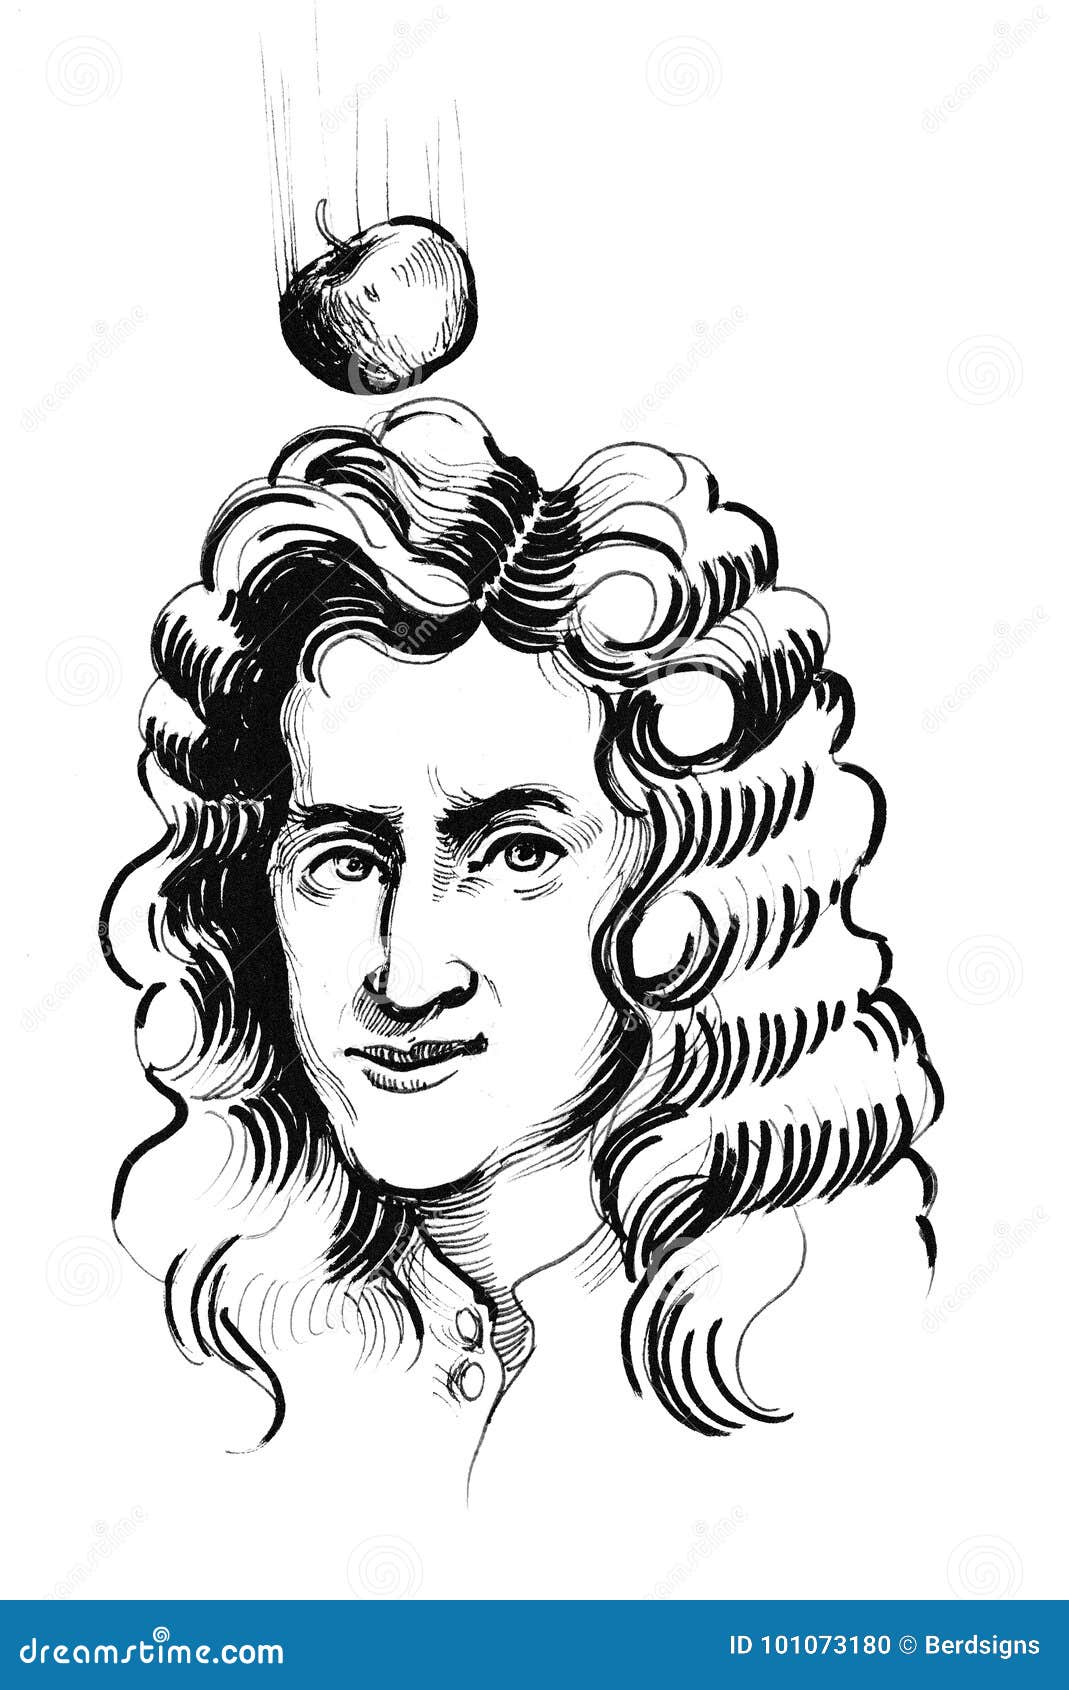 Sir Isaac Newton stock illustration. Illustration of isaac - 101073180